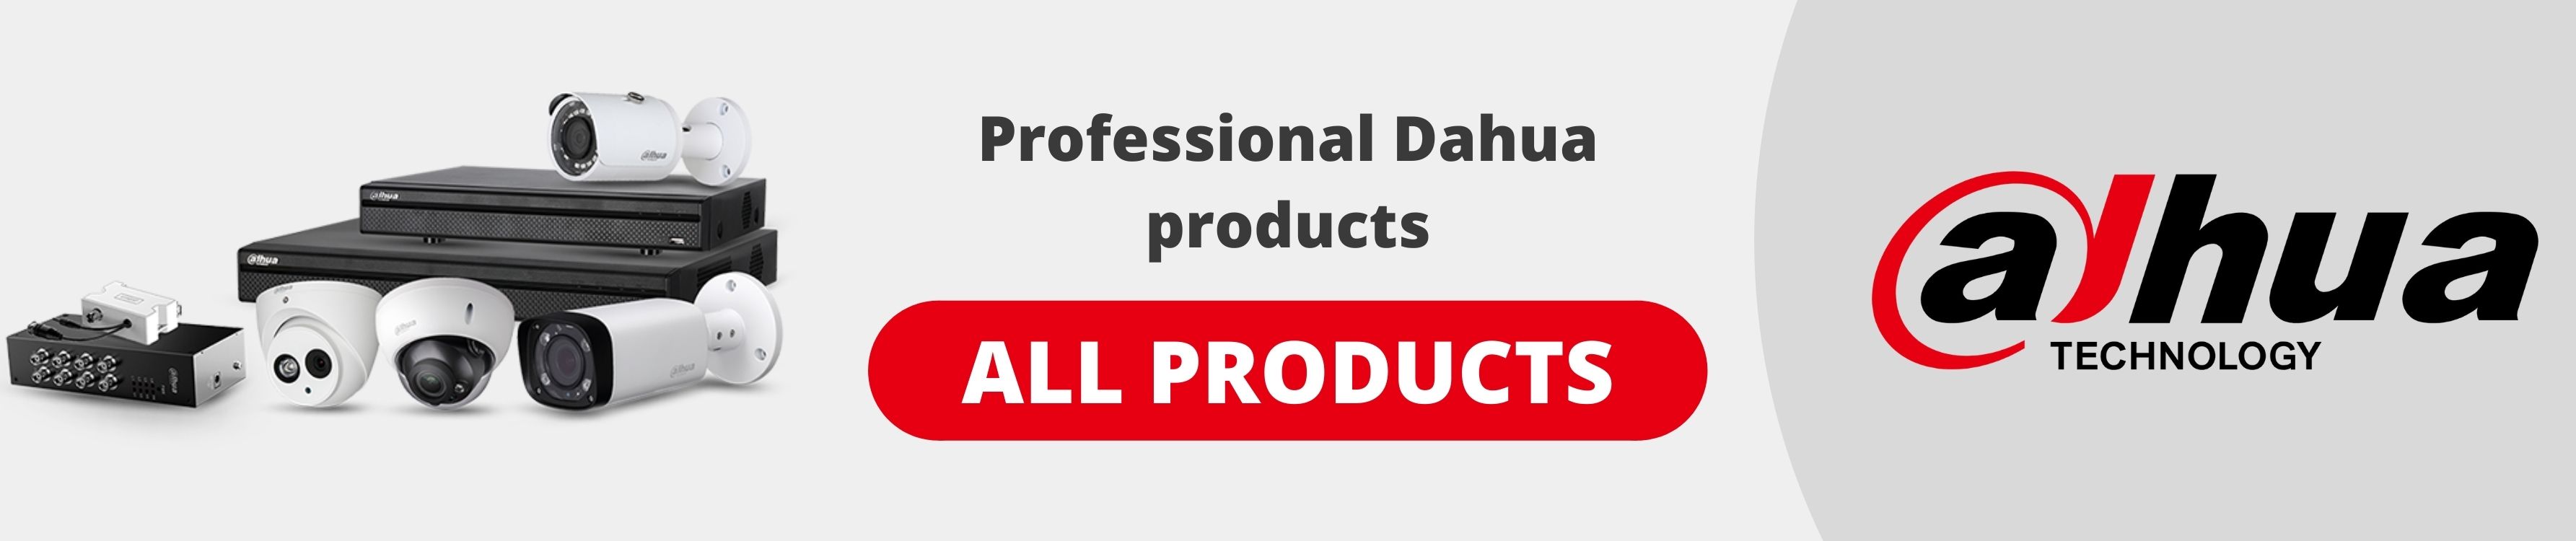 Professional Dahua Cameras